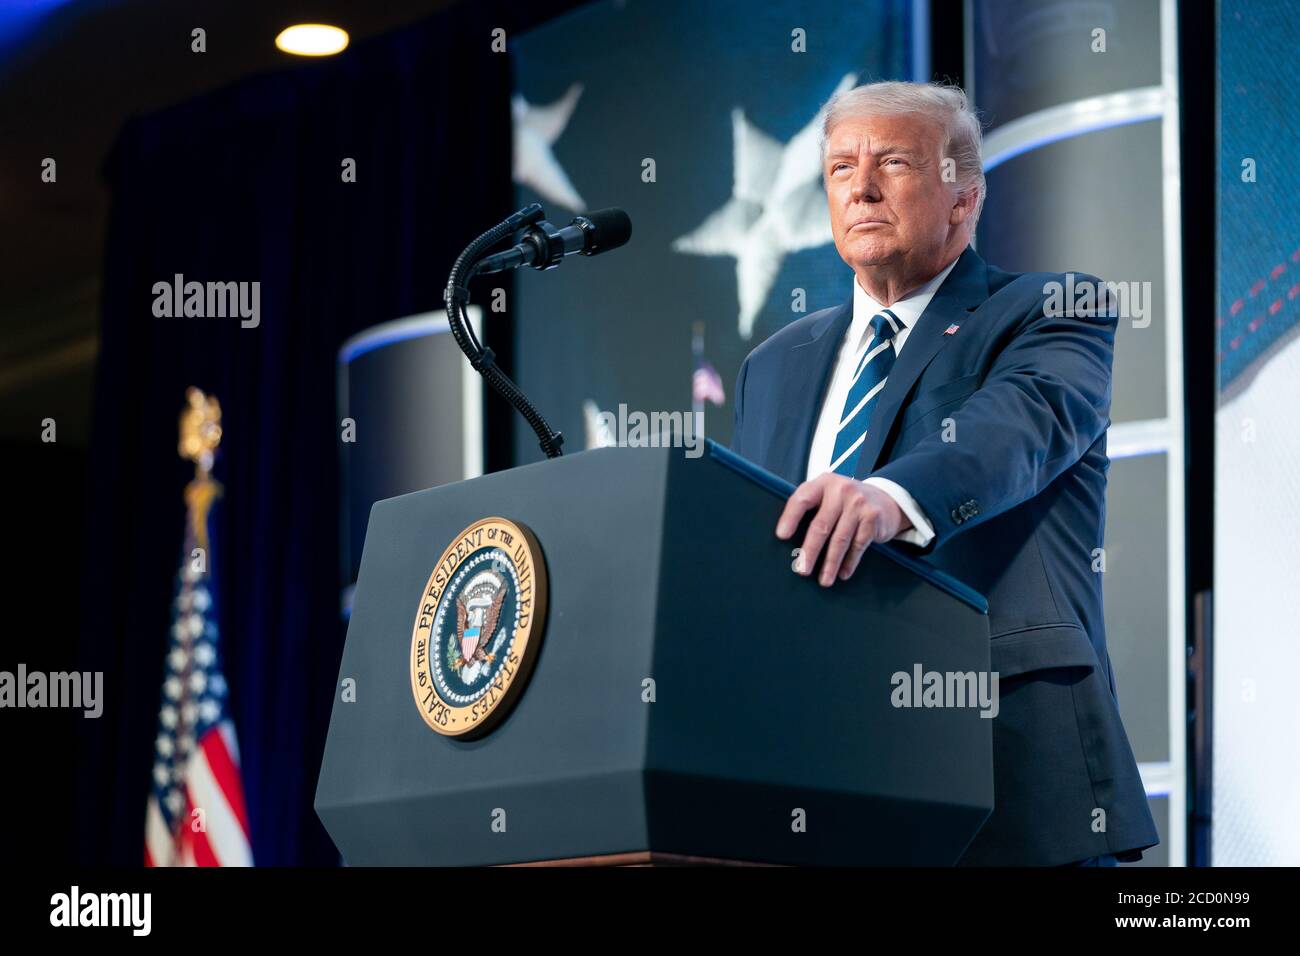 PENTAGON CITY, EE.UU. - 21 de agosto de 2020 - el presidente Donald J. Trump pronuncia un discurso en la reunión del Consejo de Política Nacional de 2020 el viernes, 21 de agosto de 2020 Foto de stock